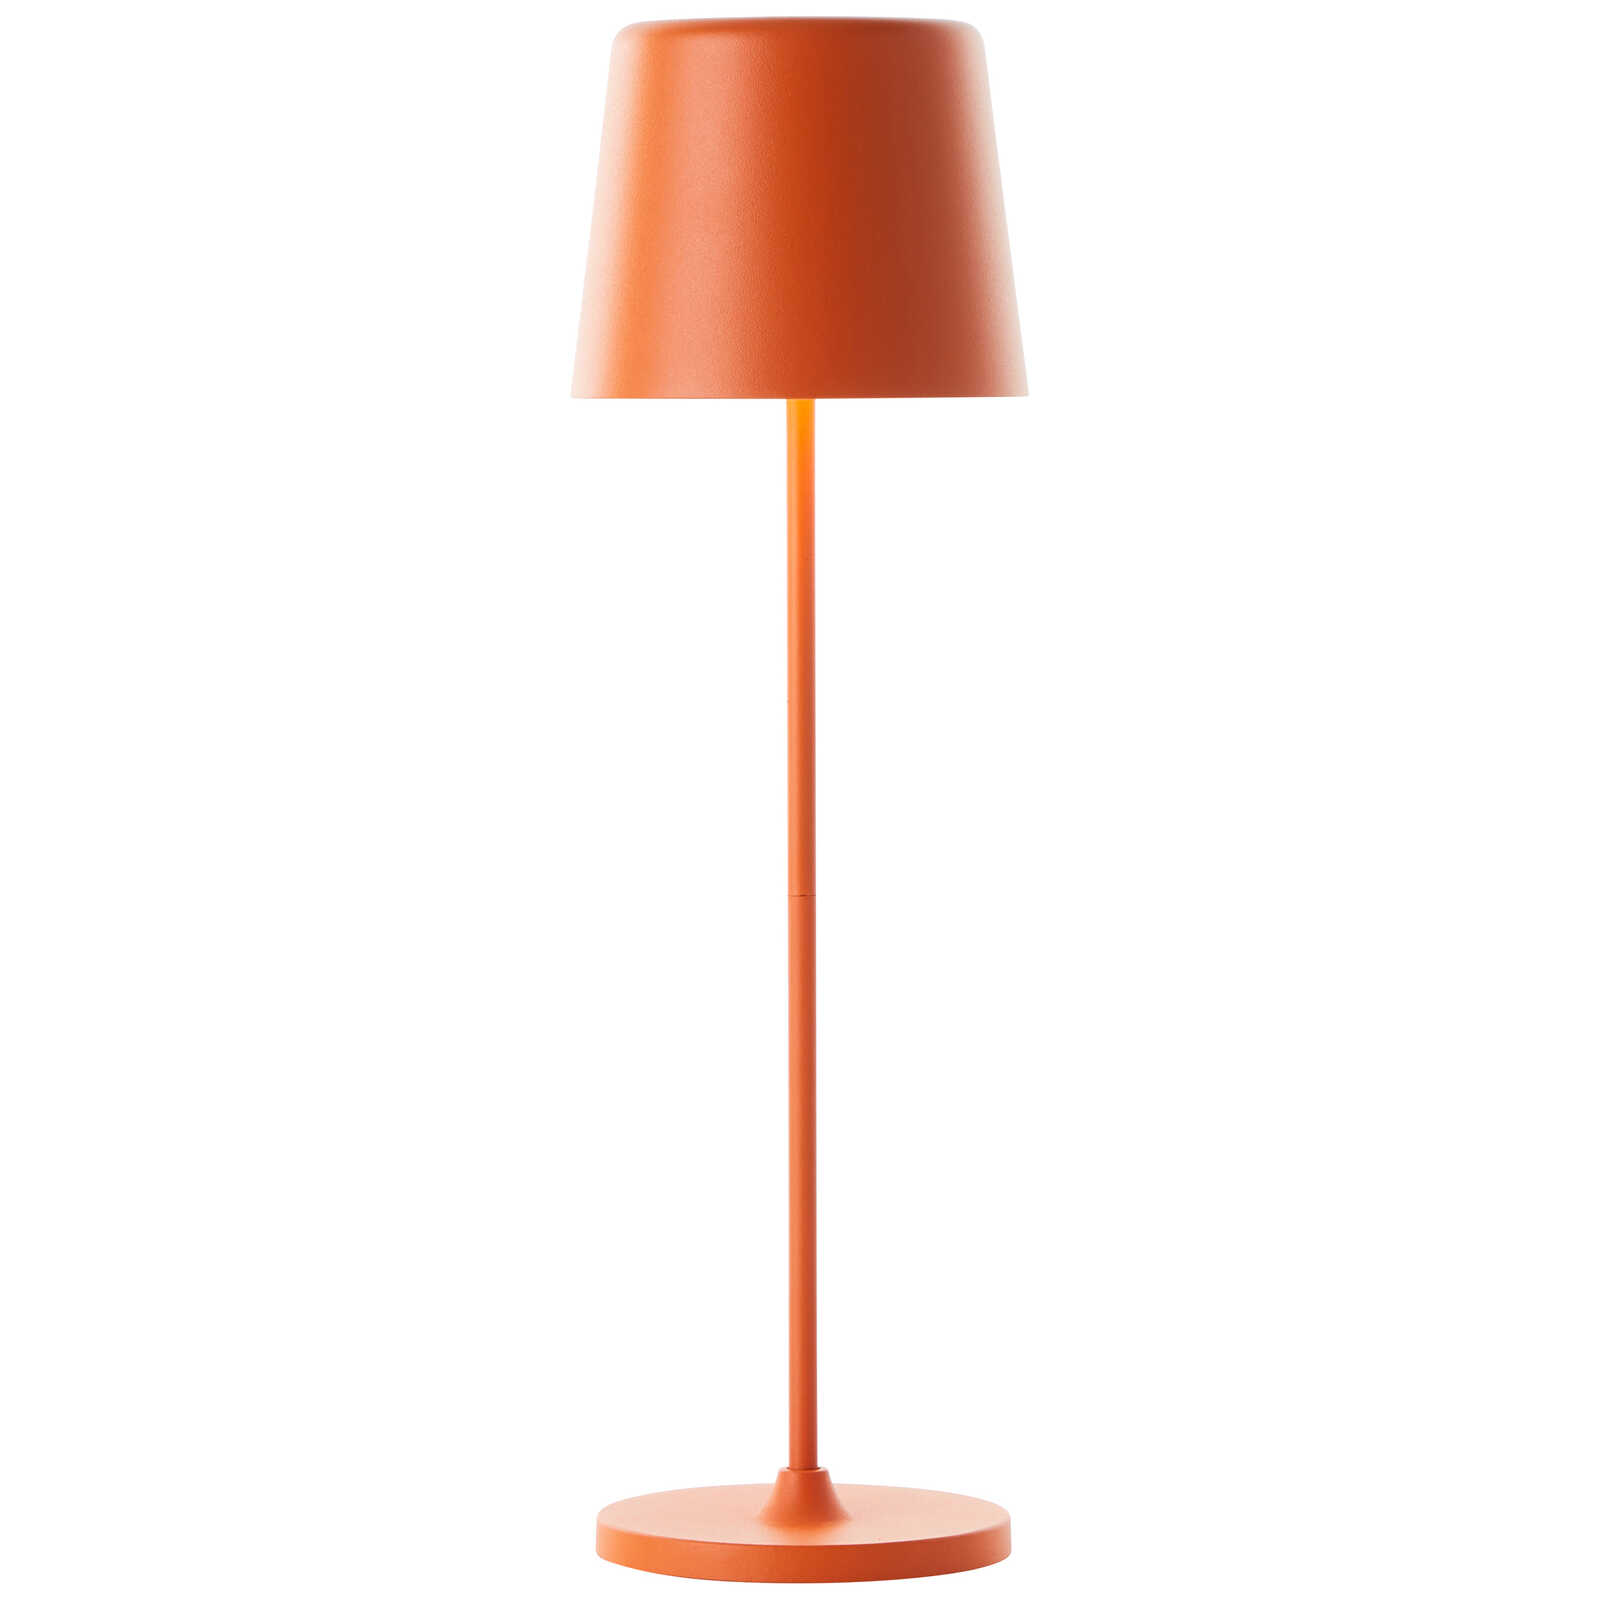             Lampe de table en métal - Cosy 7 - Orange
        